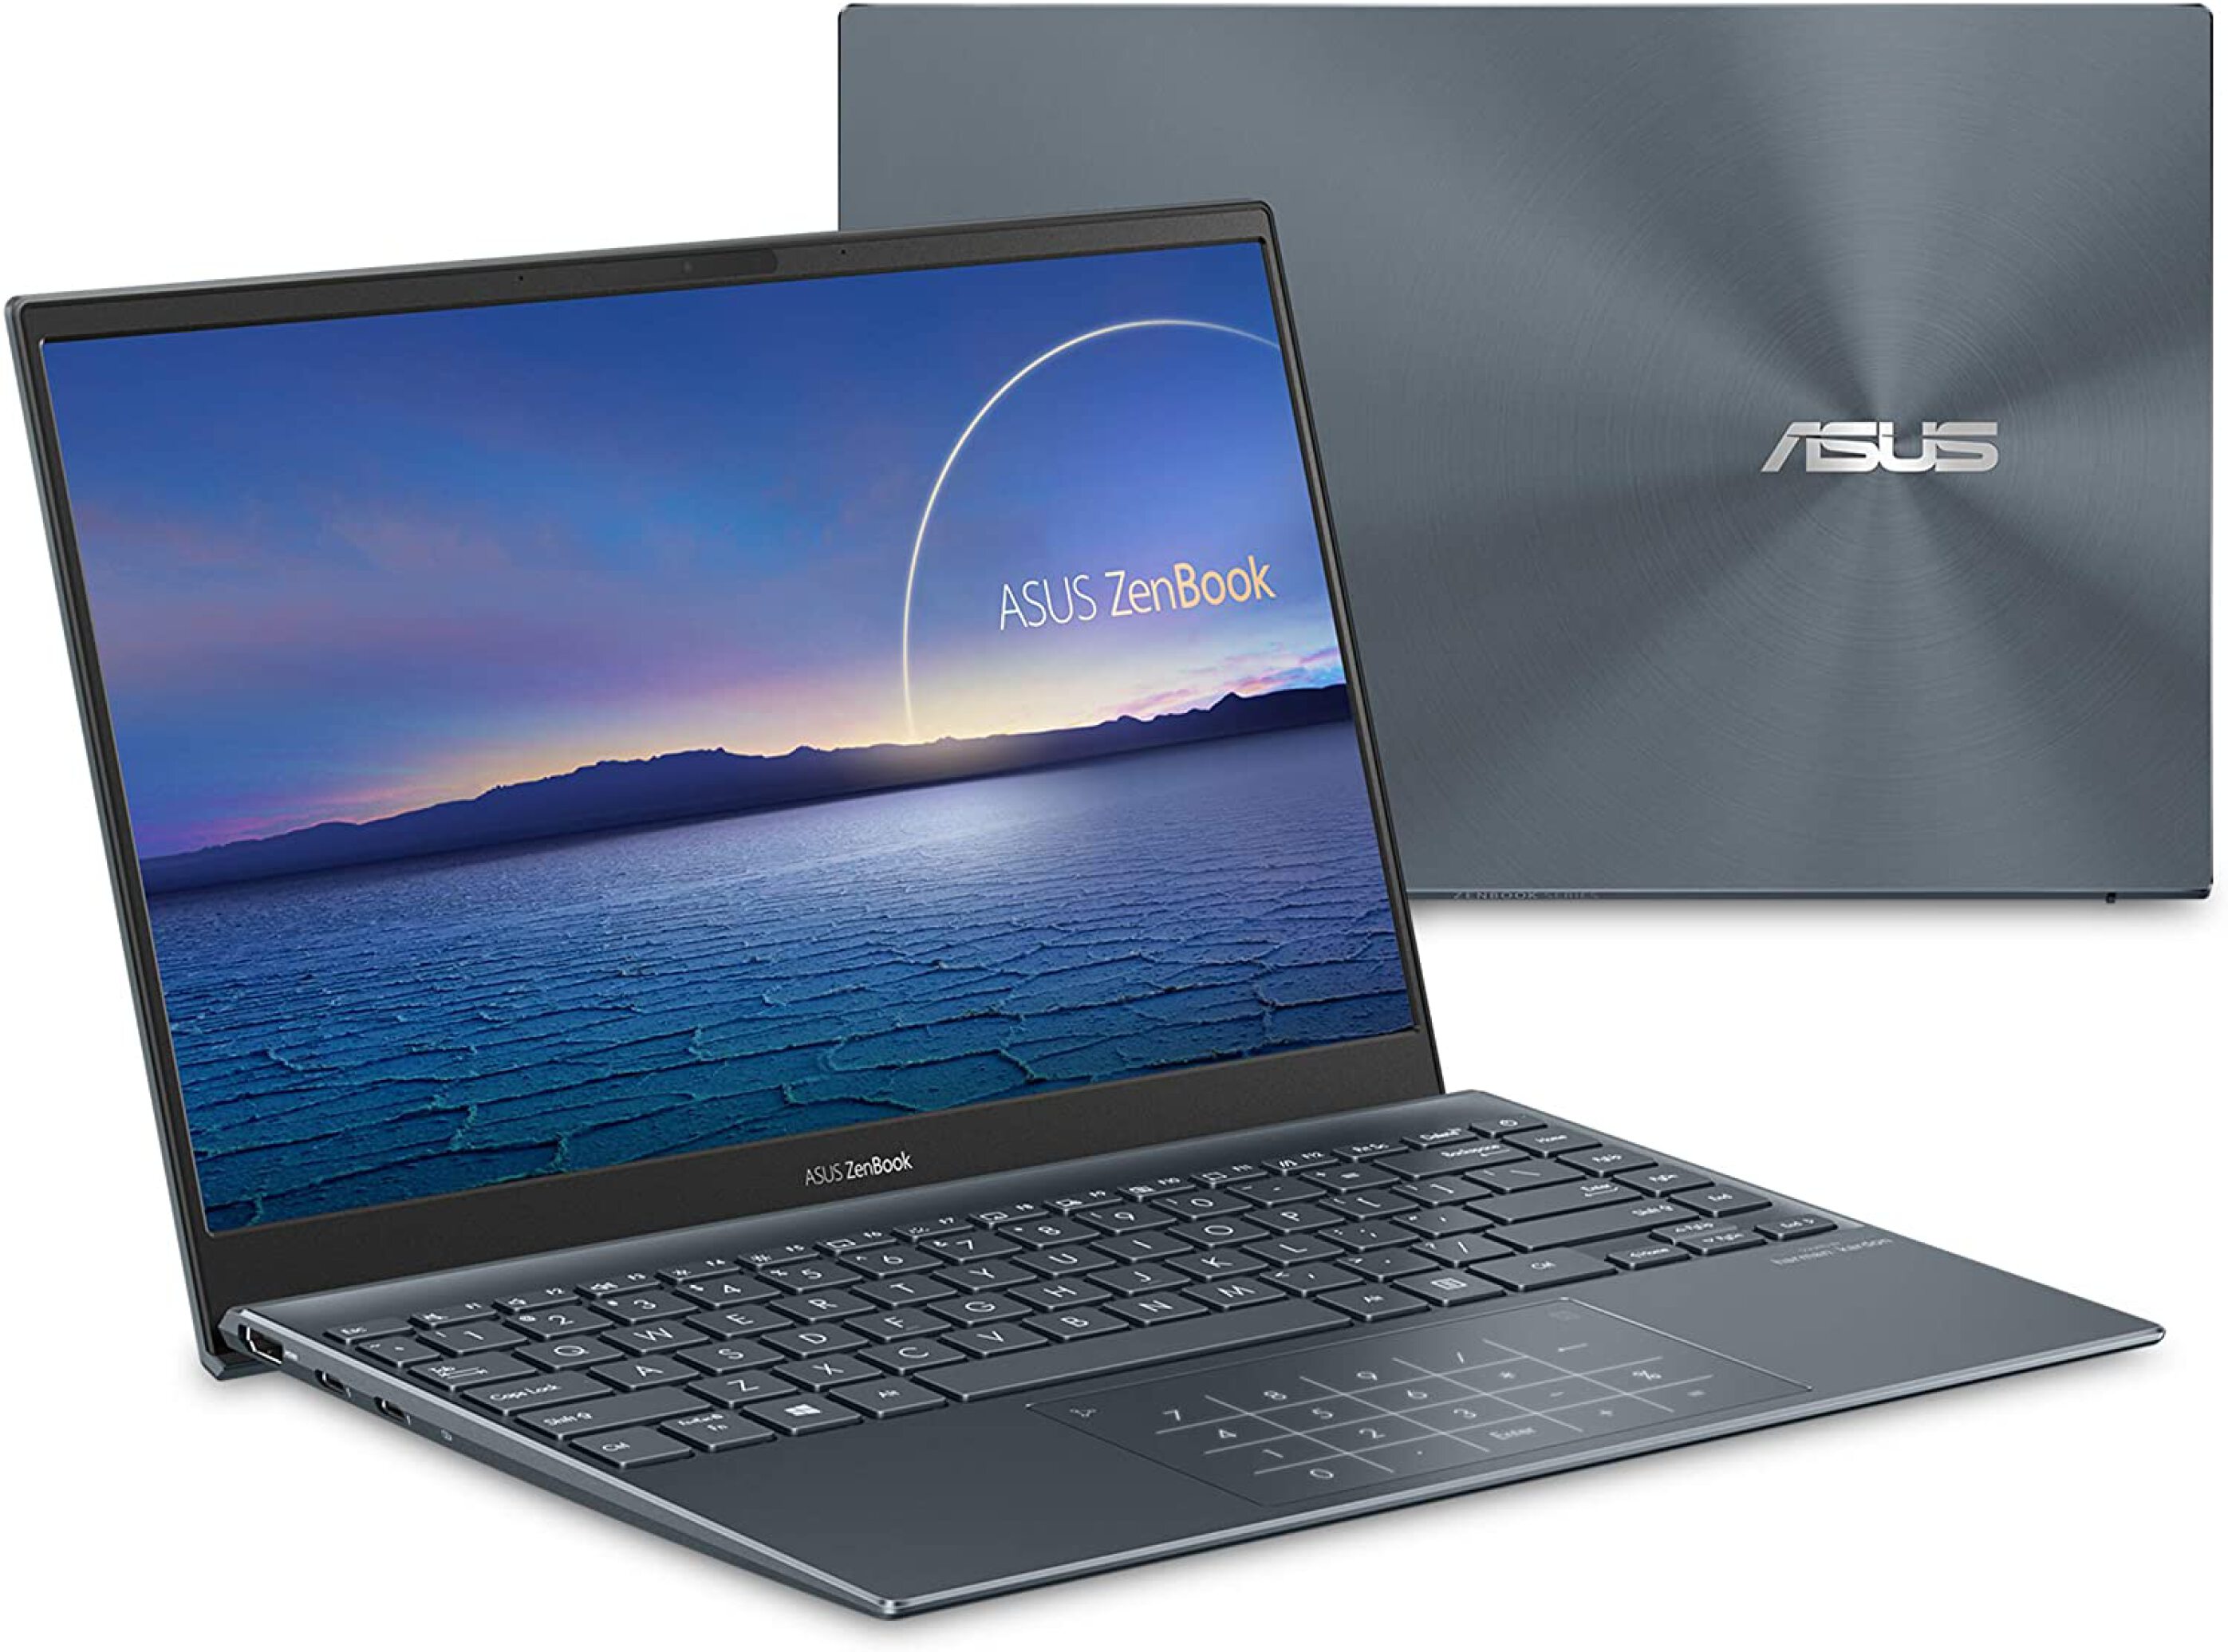  ASUS ZenBook UX363EA - EM339T i7 - 16GB 